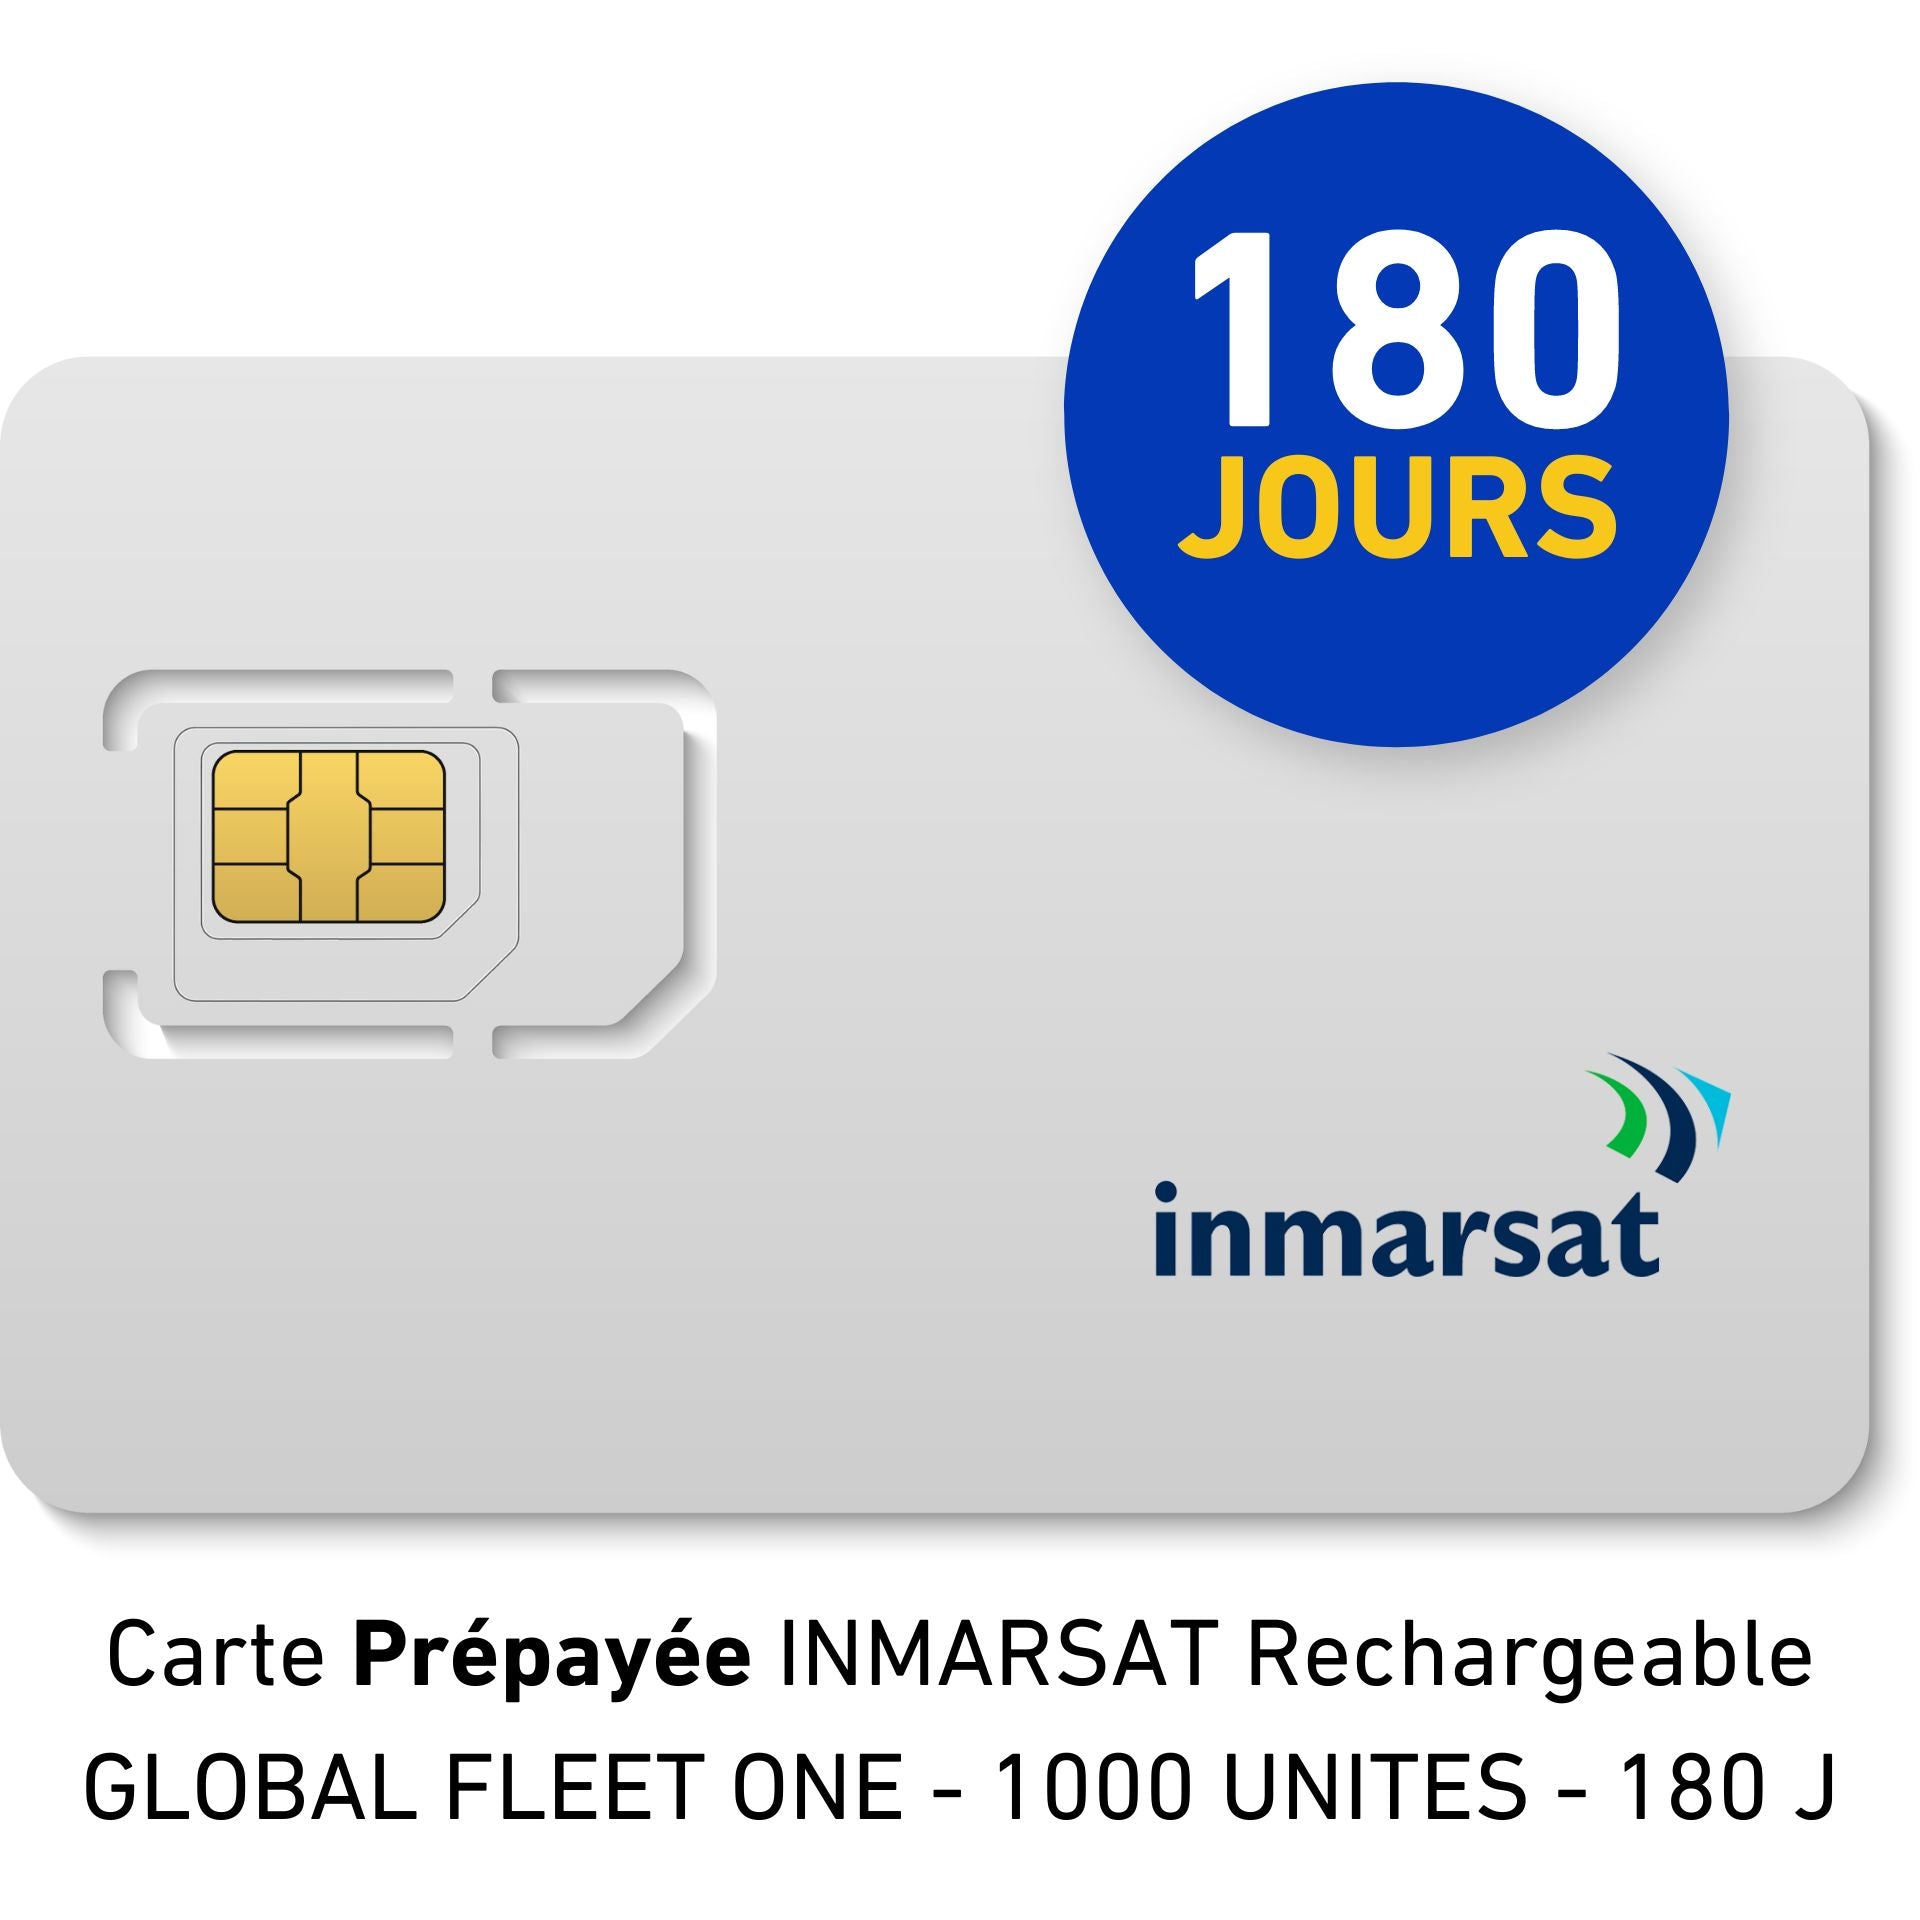 INMARSAT GLOBAL FLEET ONE Prepaid Reloadable Card - 1000 UNITS - 180 DAYS